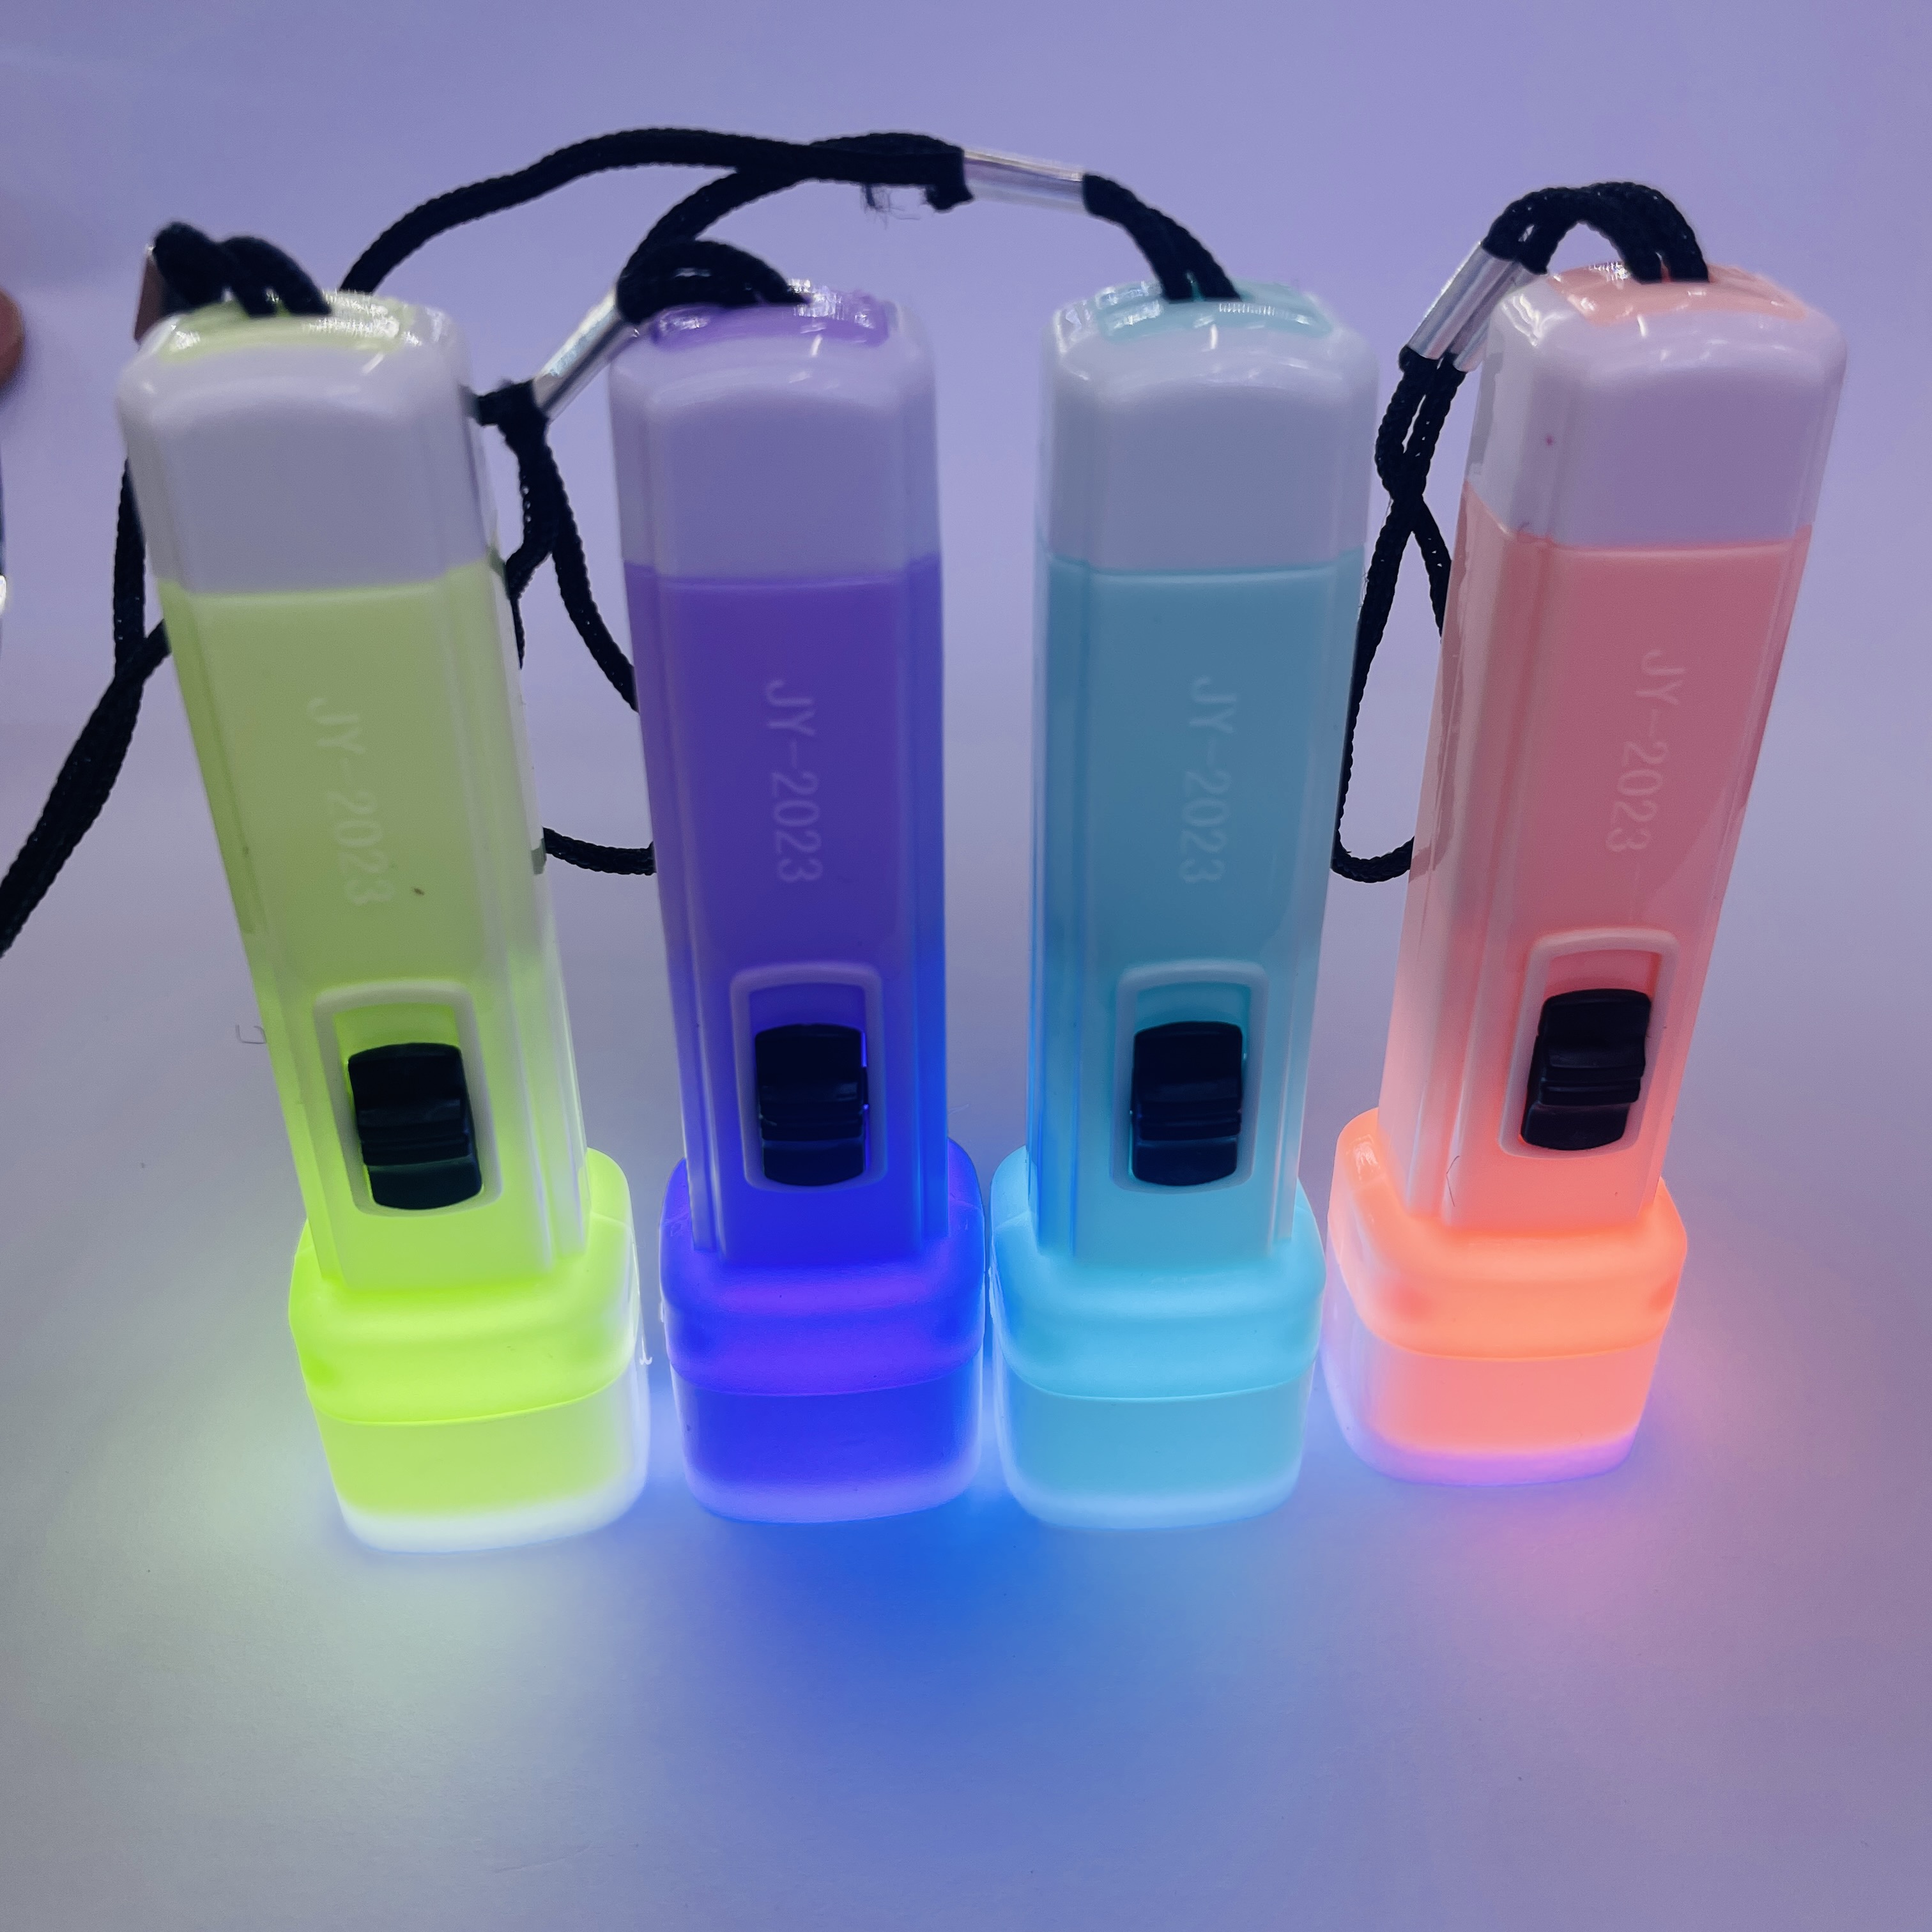 塑料玩具小手电筒强光电筒照明灯LED批发实用小家电小礼品详情11